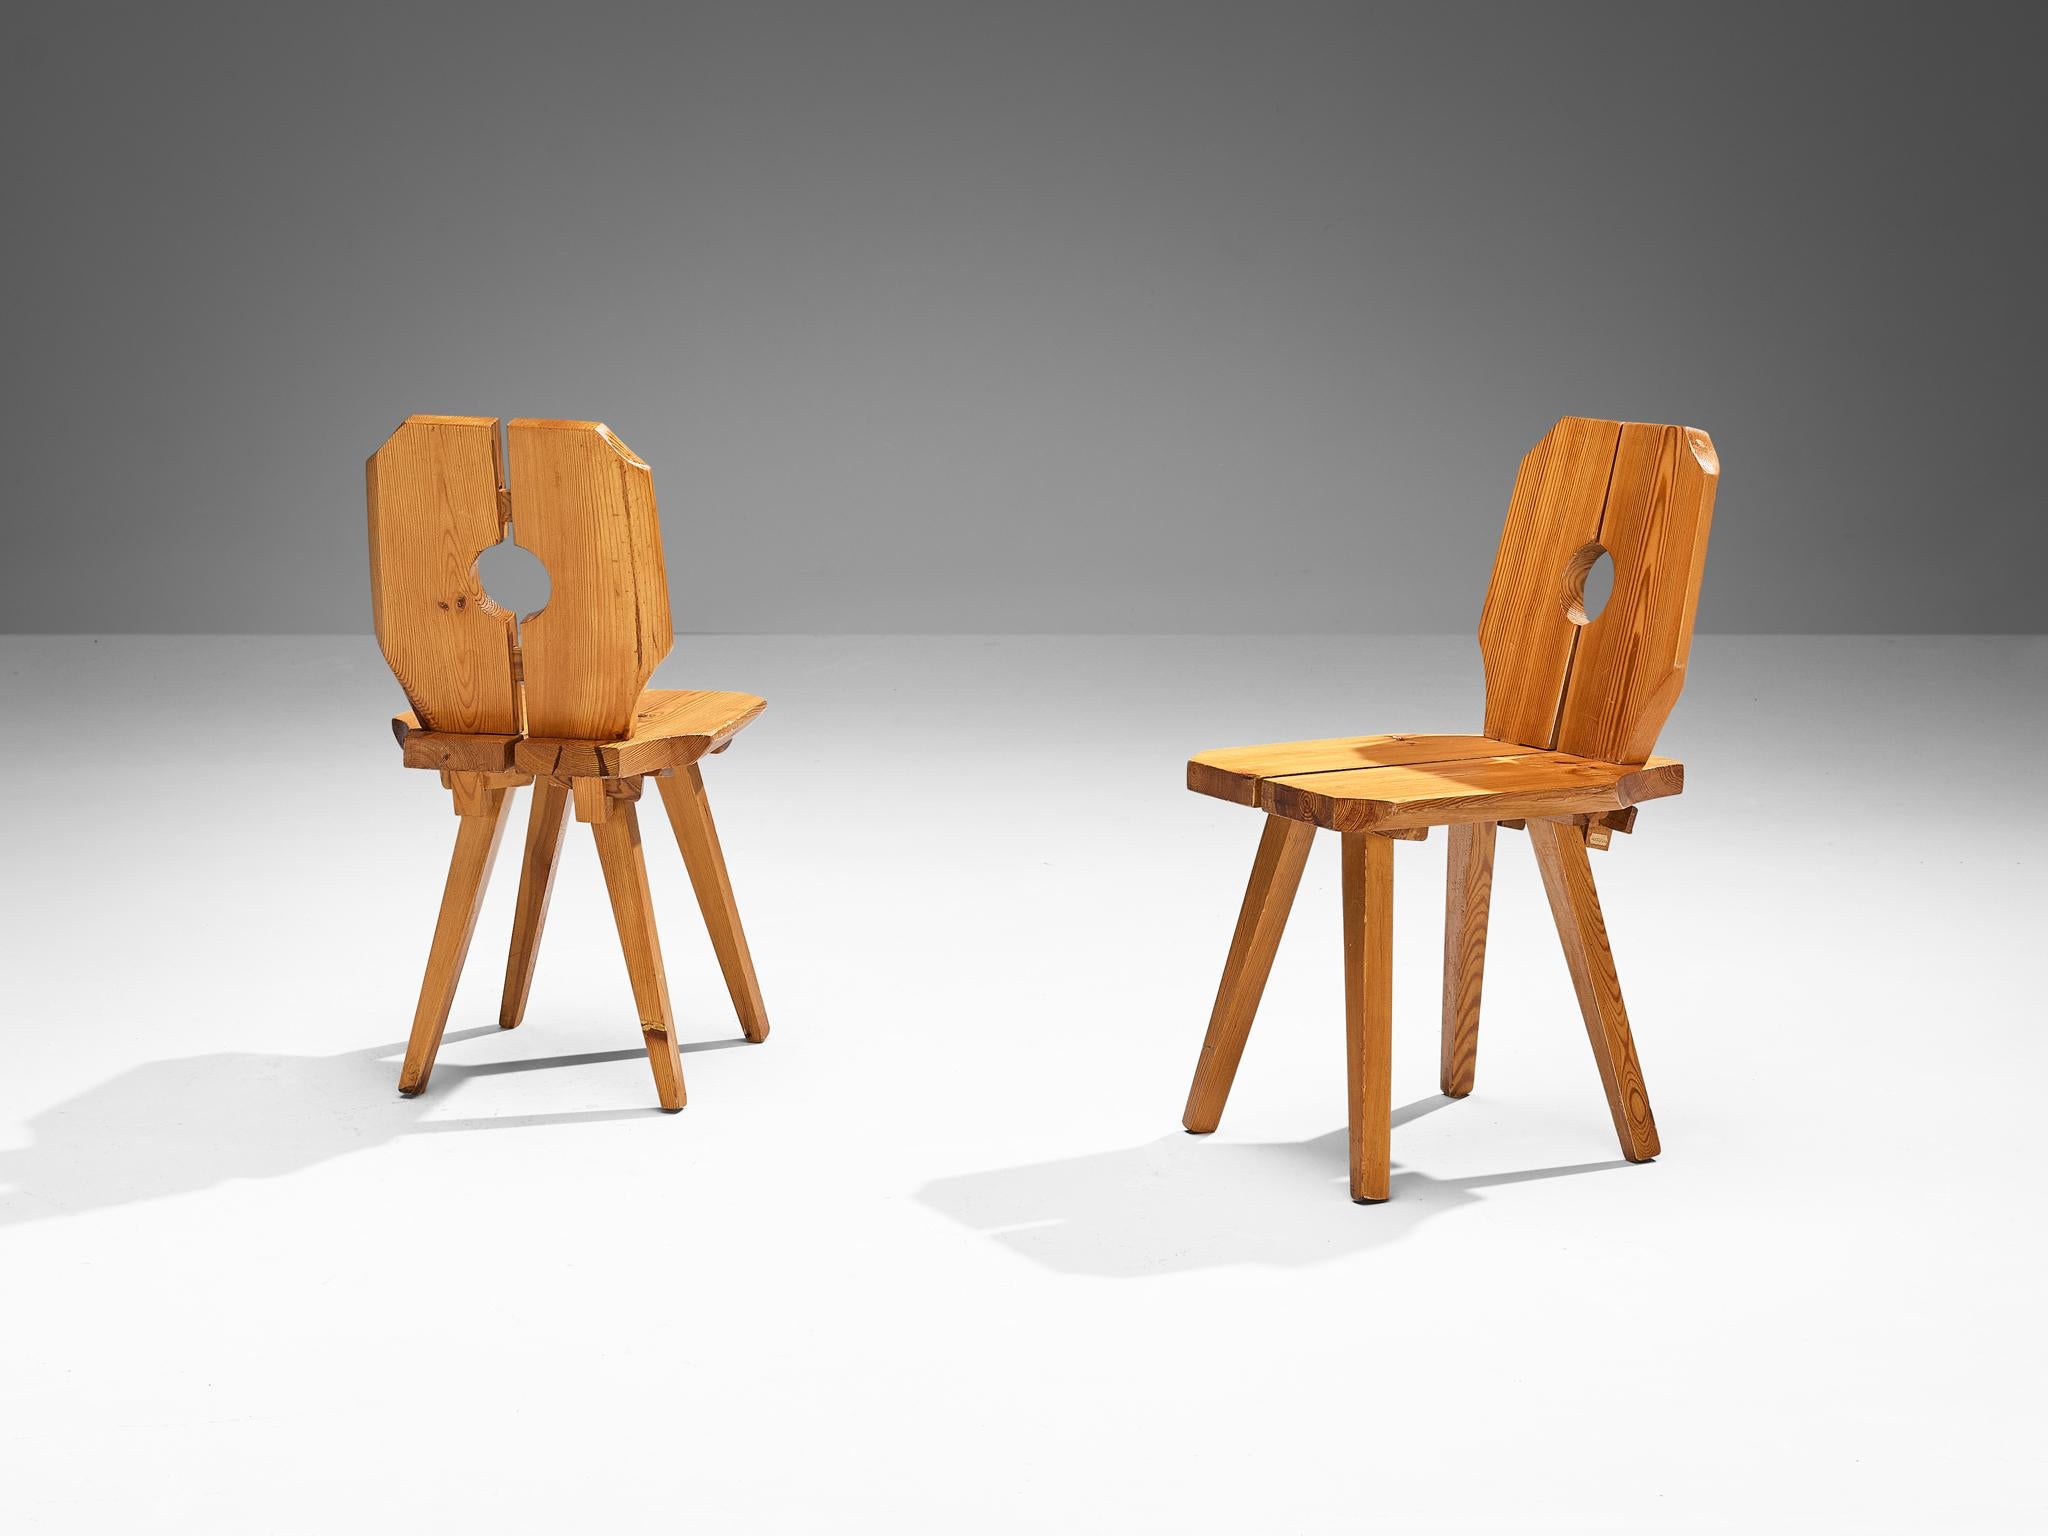 Paire de chaises de salle à manger en pin massif, Europe, années 1960

Chaises de salle à manger sculptées en pin au grain expressif. De nombreux éléments caractérisent l'aspect sculpté de cet ensemble de douze chaises. Tout d'abord, le dossier et